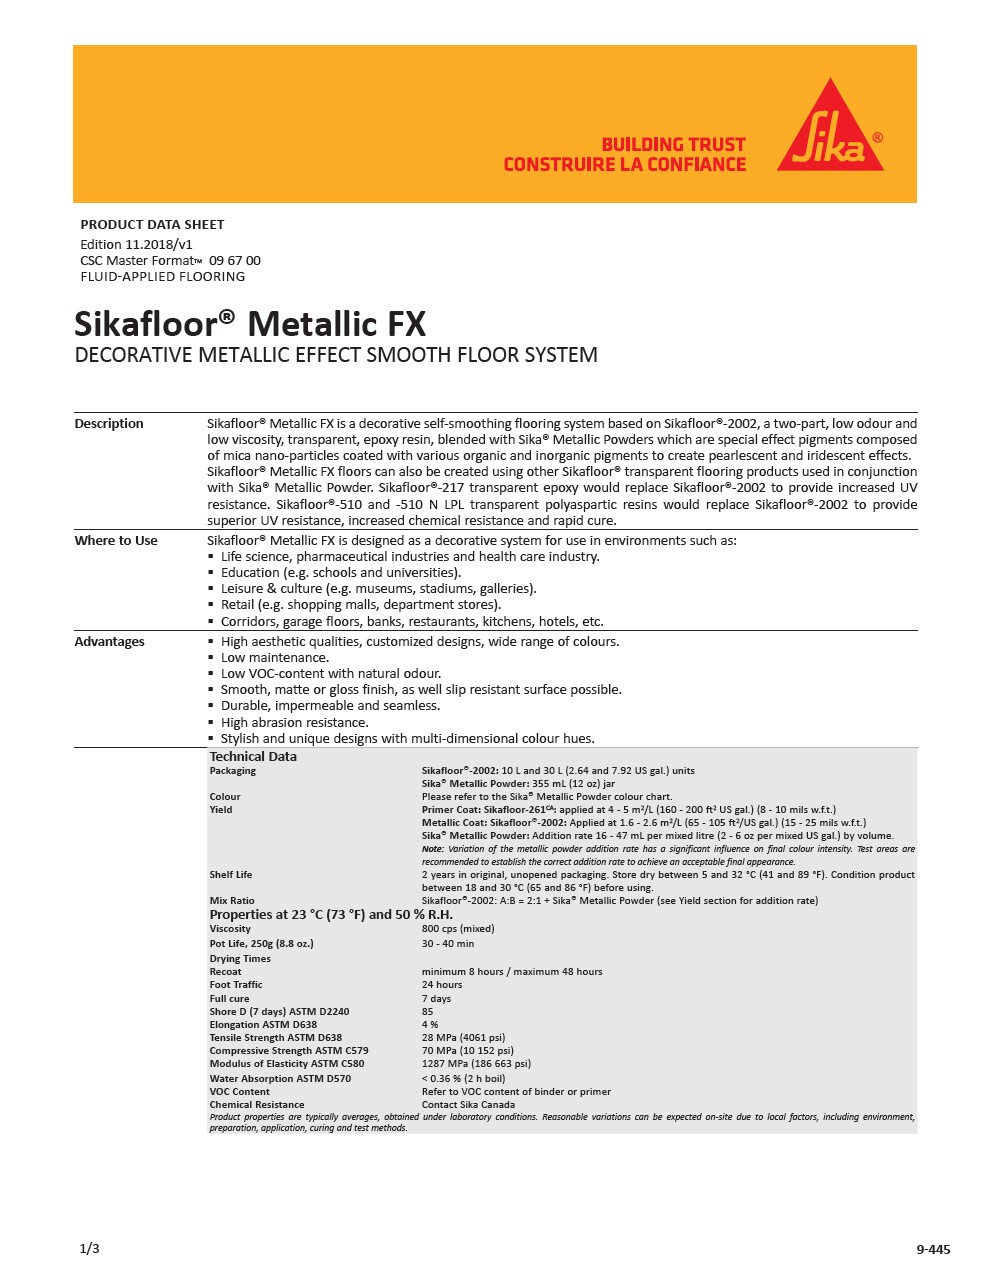 Sikafloor® Metallic FX